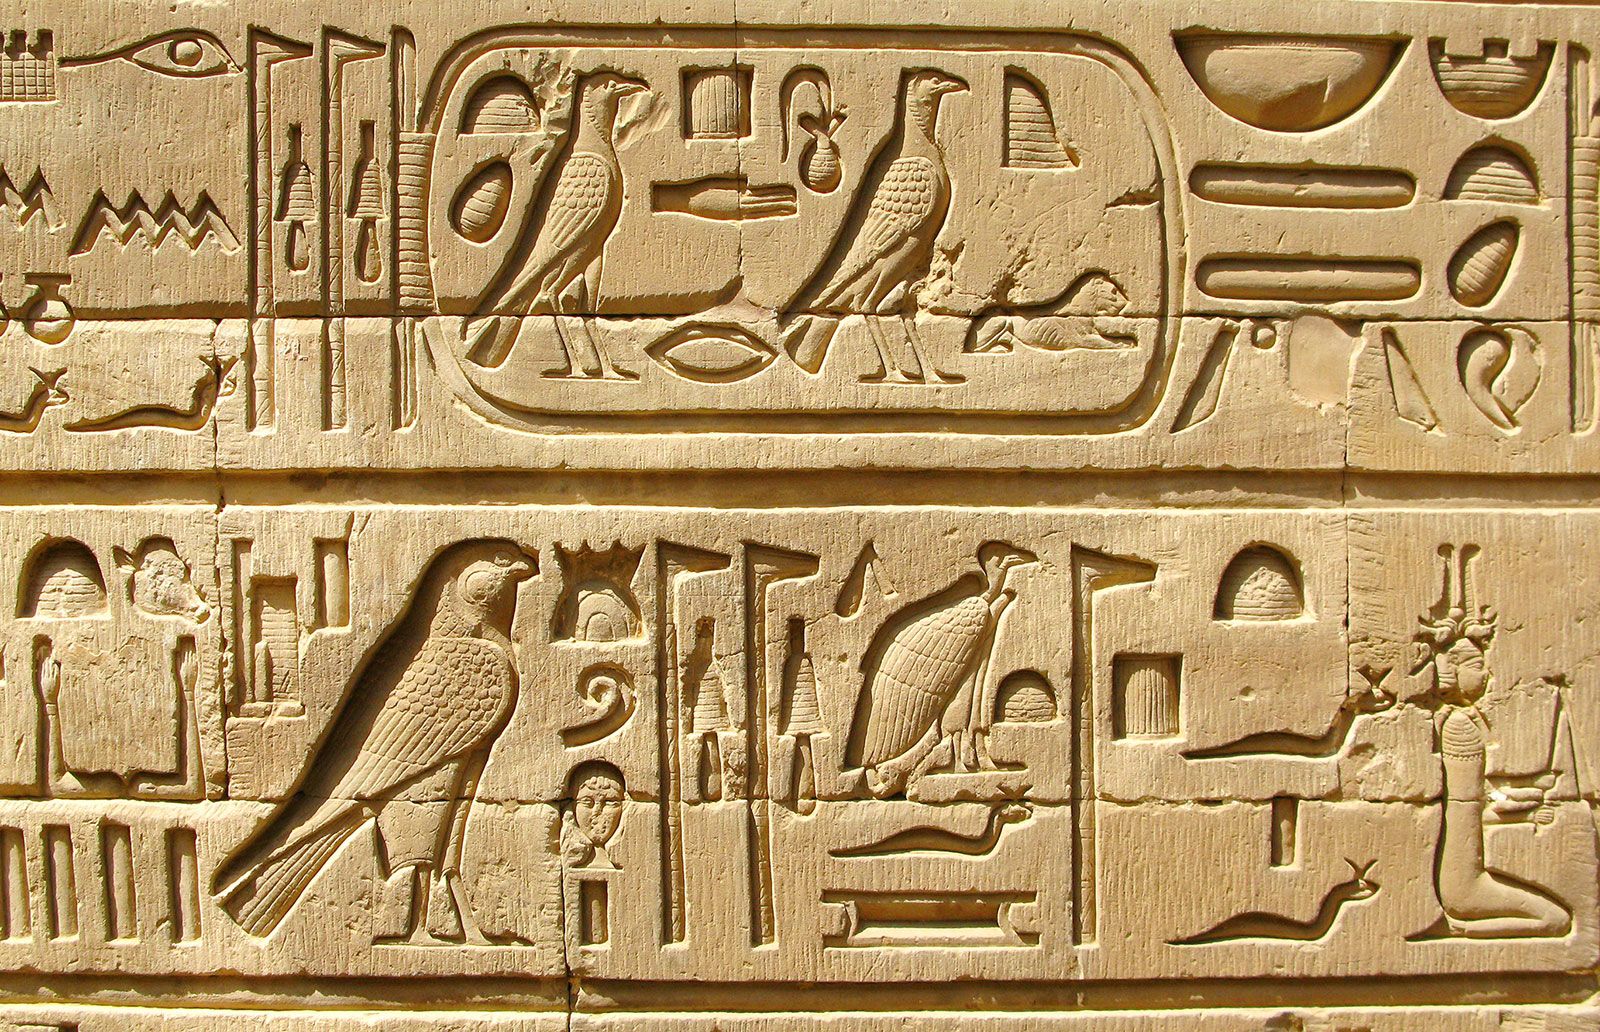 Muinaisen Egyptin hieroglyfit